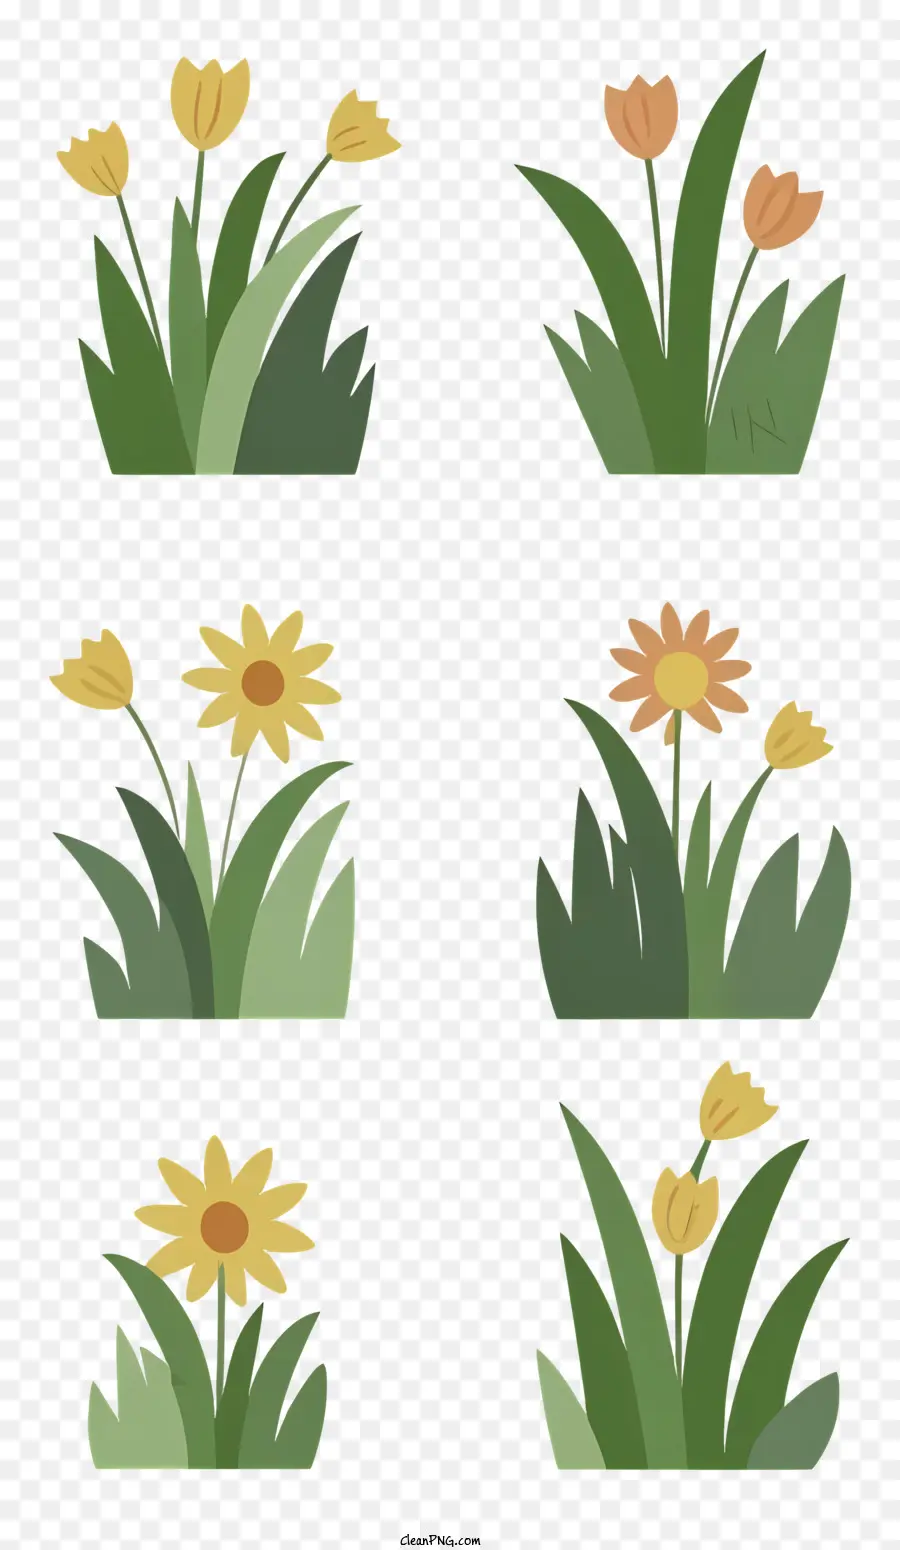 Hoa màu xanh lá cây nở hoa hoa tulip màu vàng hoa tulip - Sáu loại hoa trên cánh đồng màu xanh lá cây